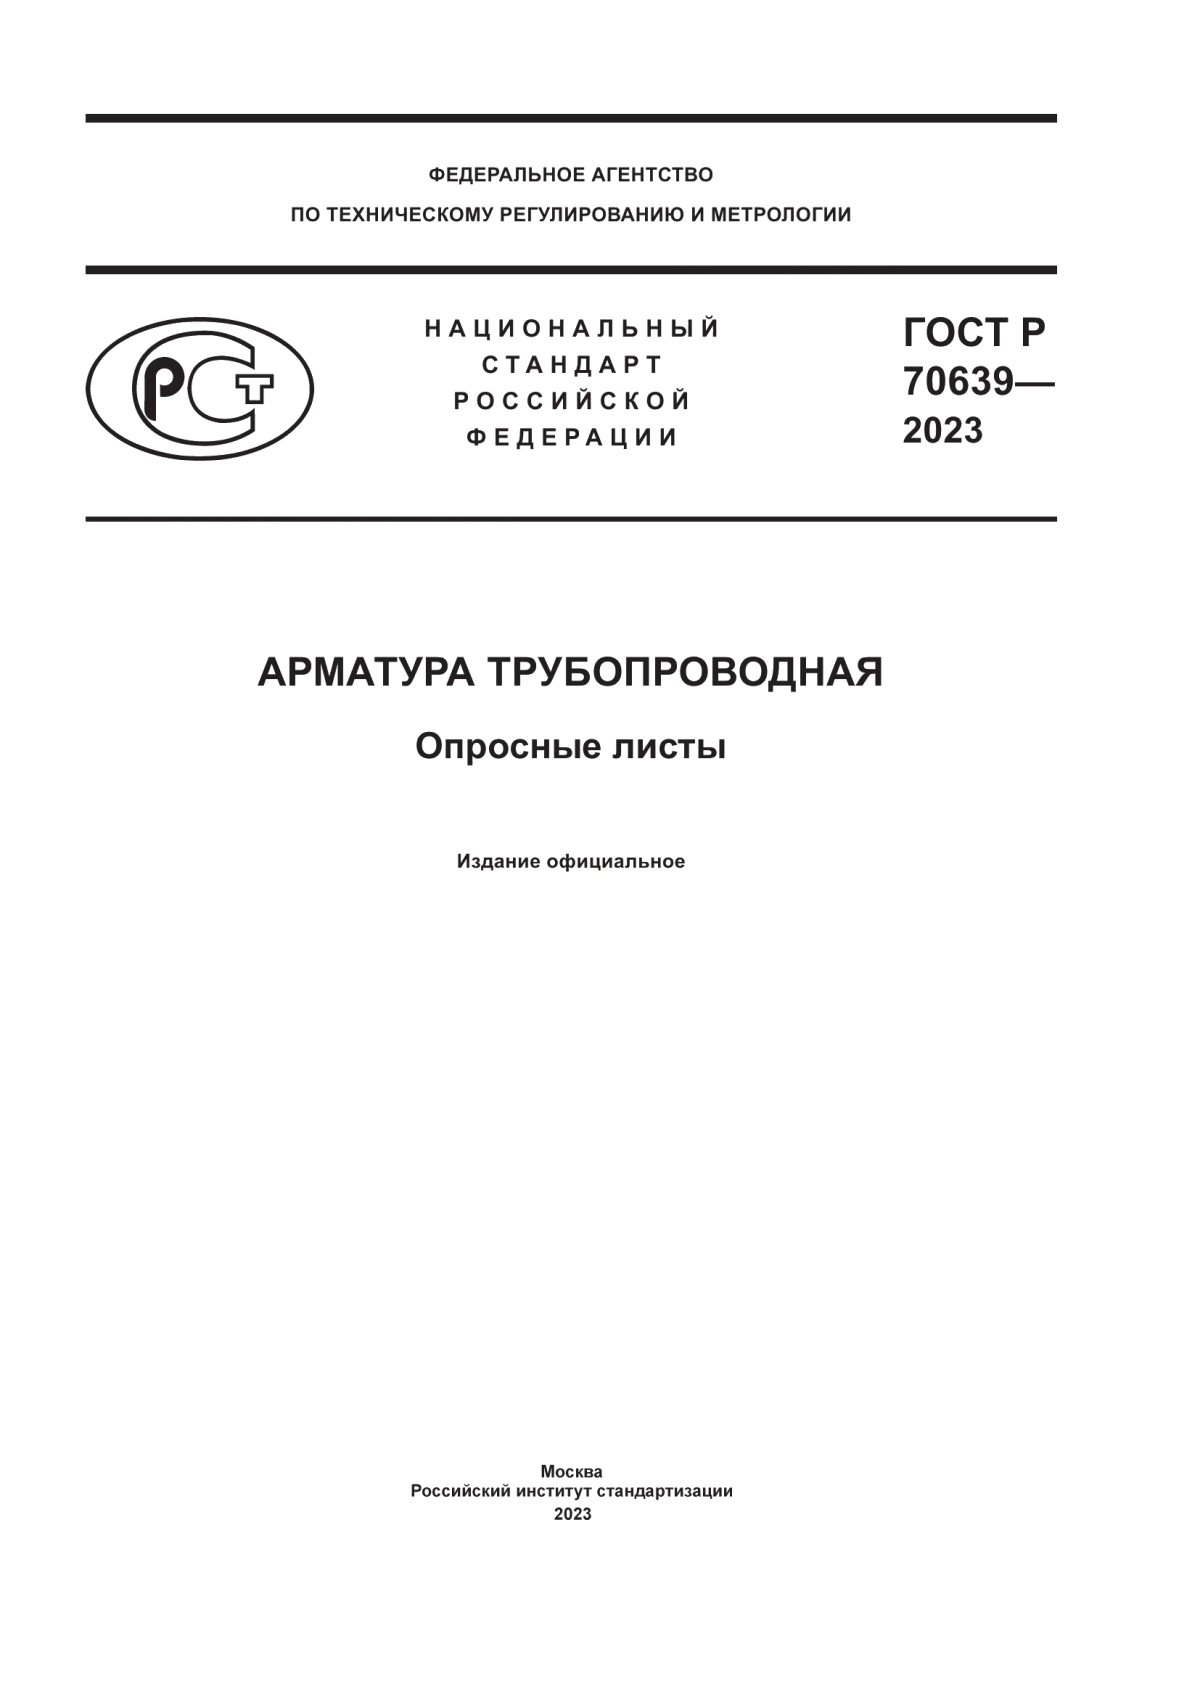 ГОСТ Р 70639-2023 Арматура трубопроводная. Опросные листы